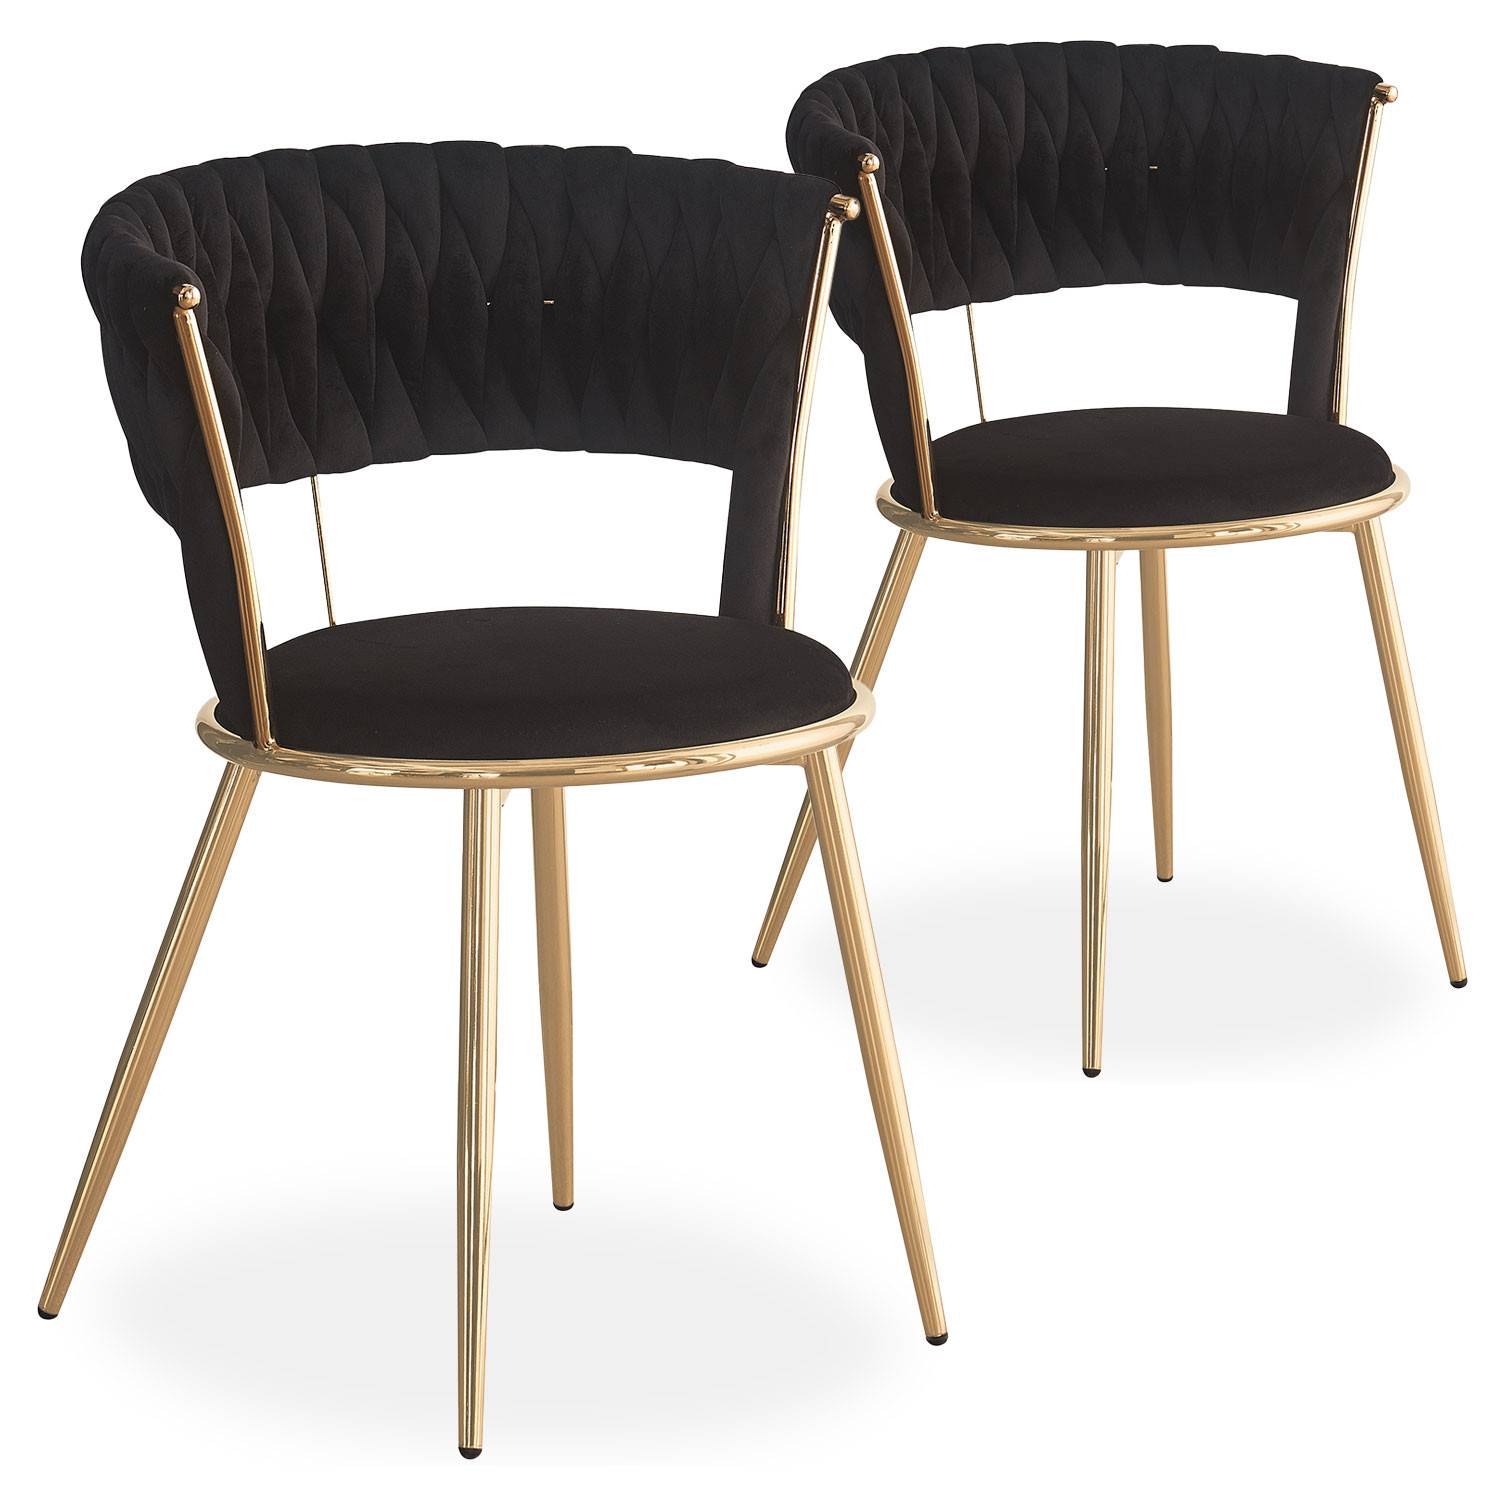 Lote de 2 sillas redondas Varadian de terciopelo negro y metal dorado